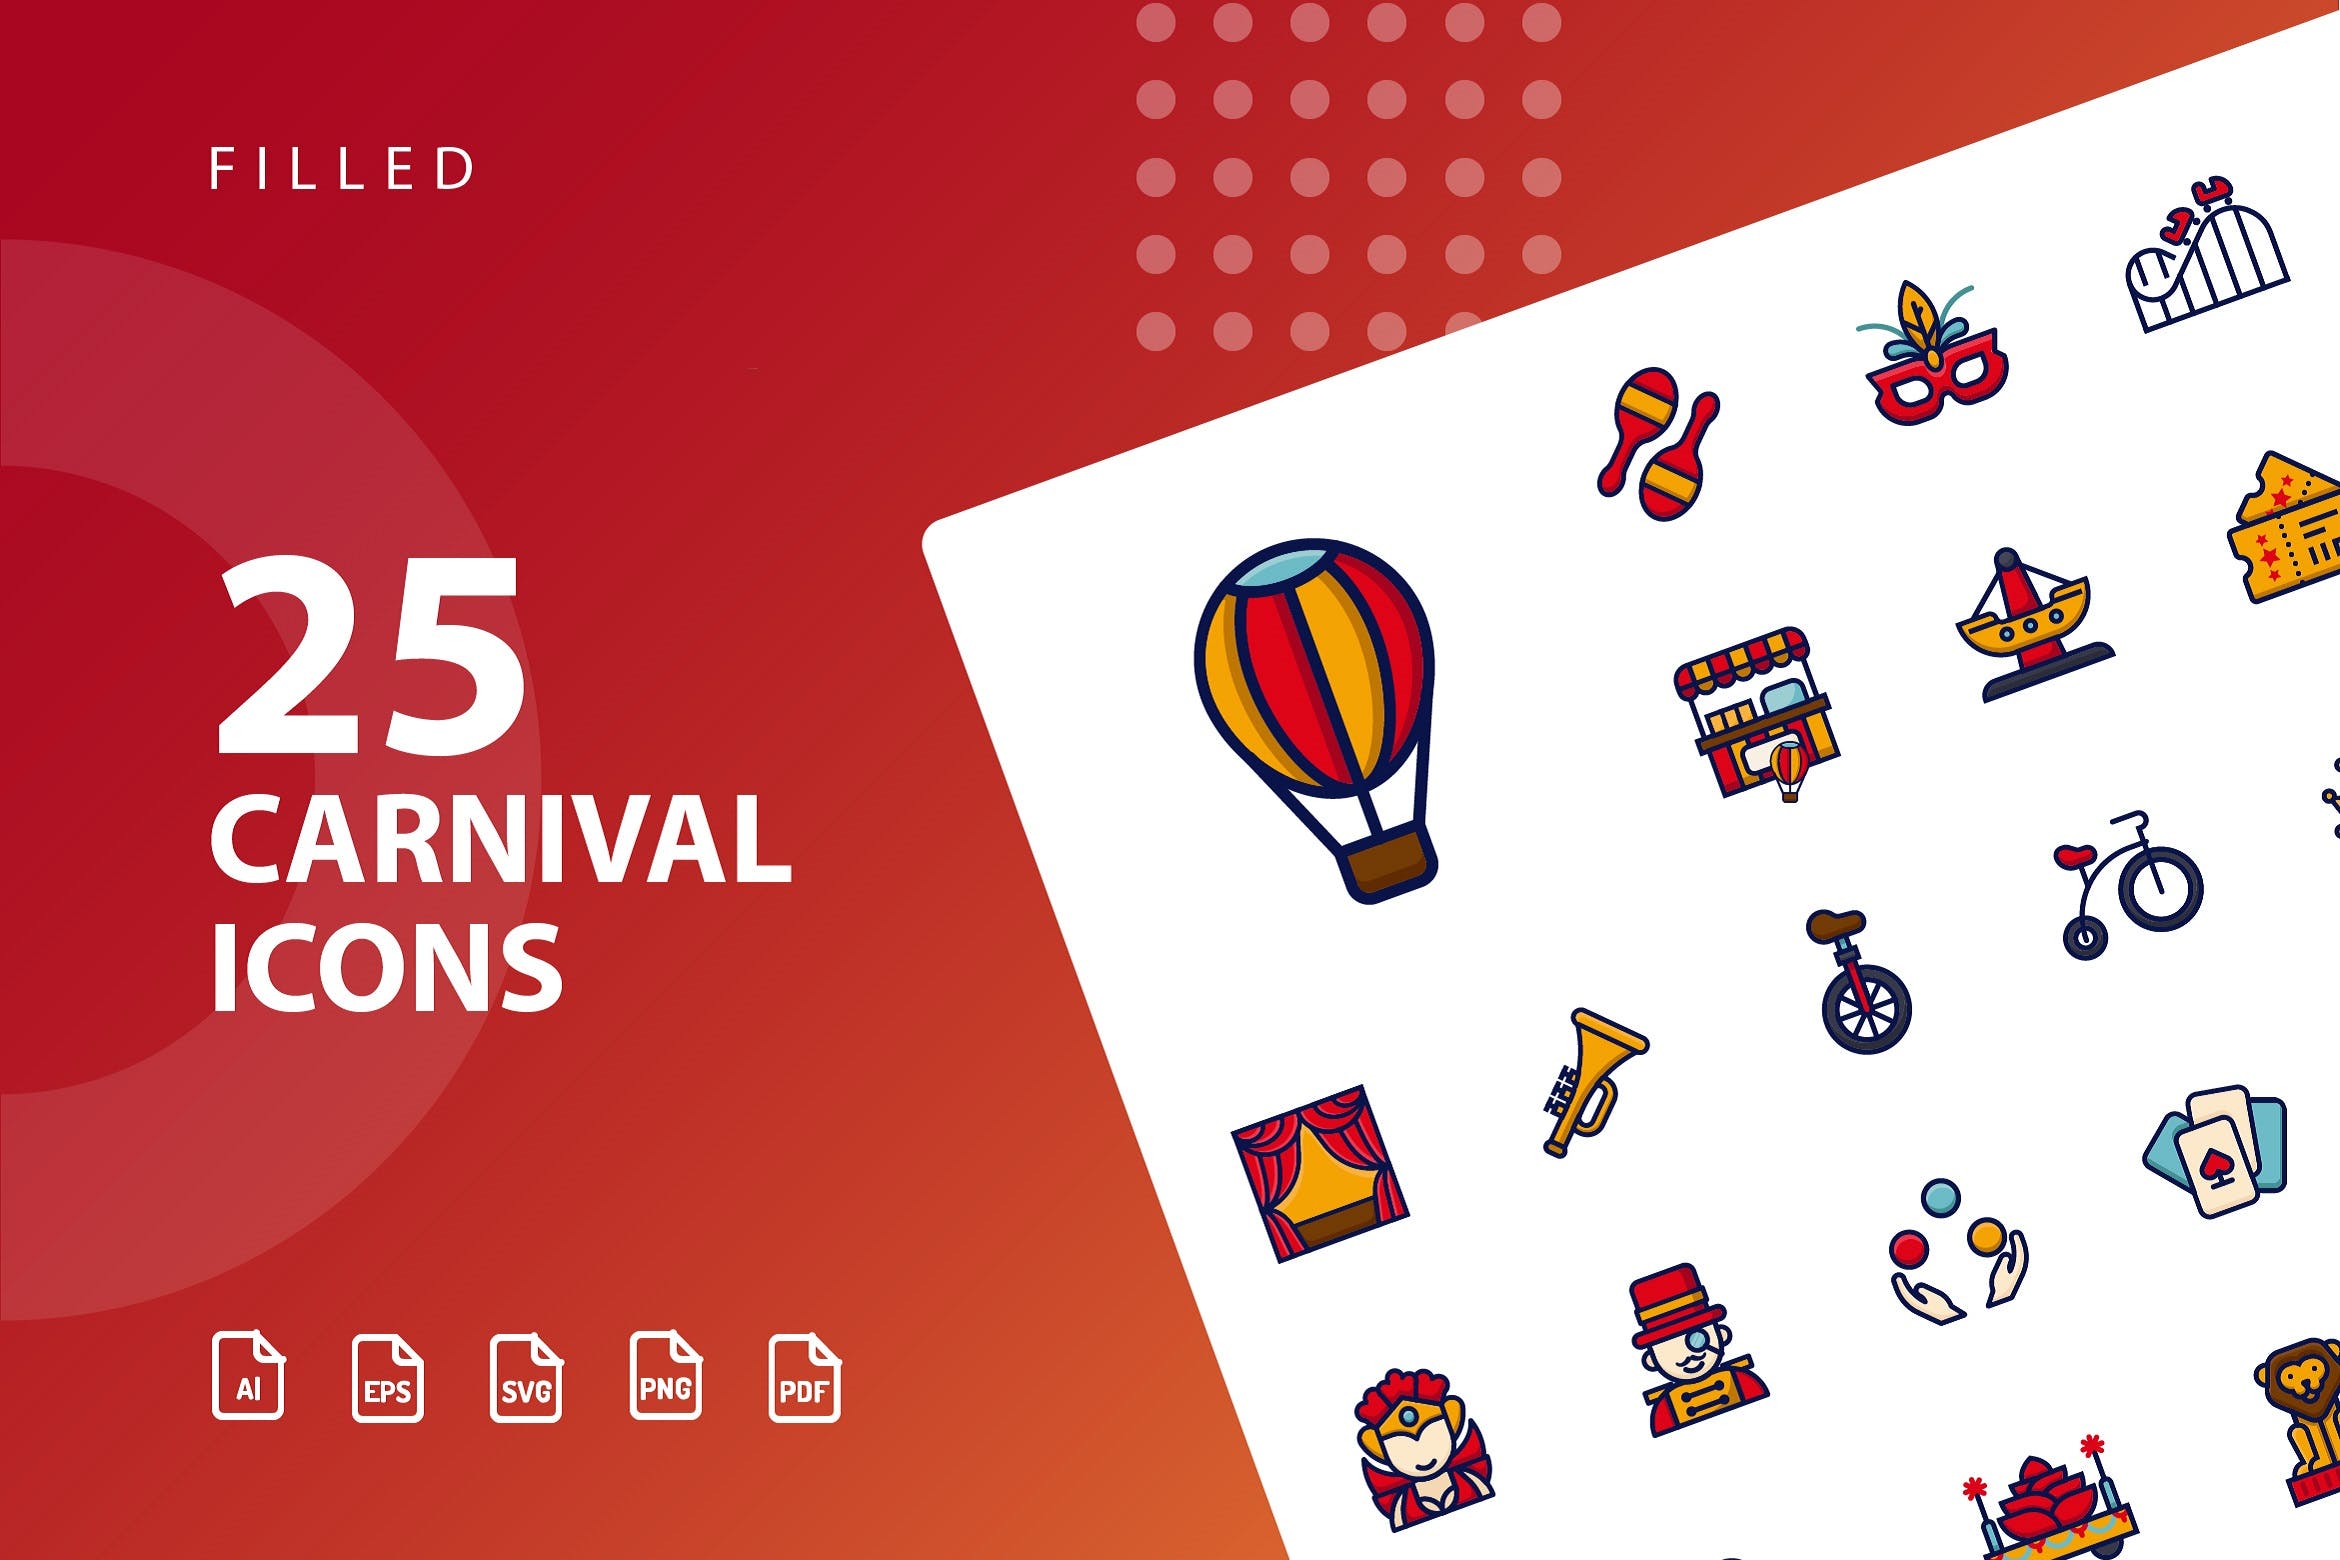 25枚狂欢节填充第一素材精选图标素材 Carnival Filled插图